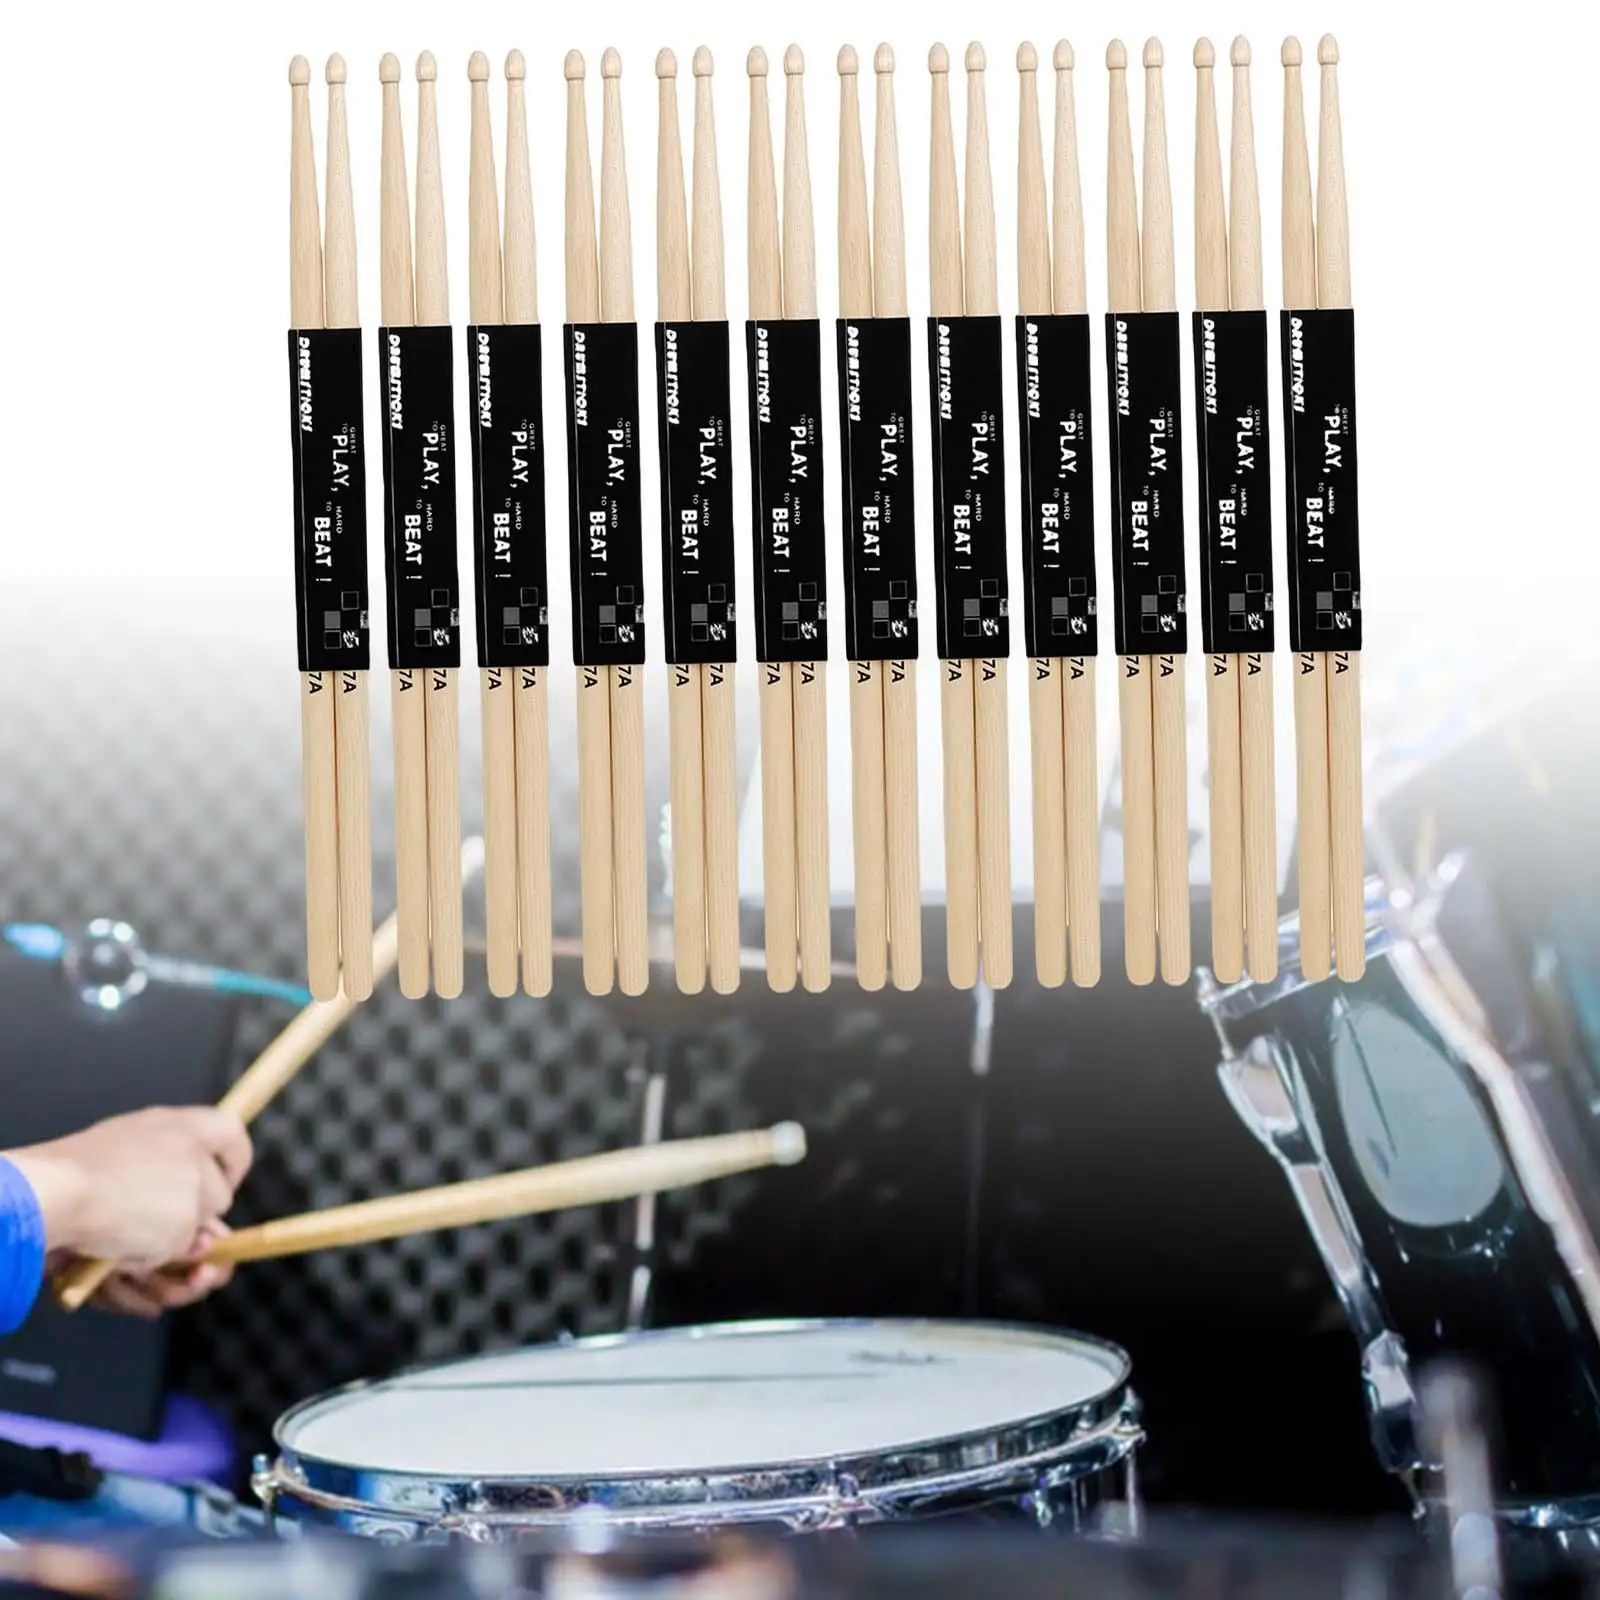 12 Pairs Jazz Drumsticks Wooden Drumstick for Children Professionals Kids